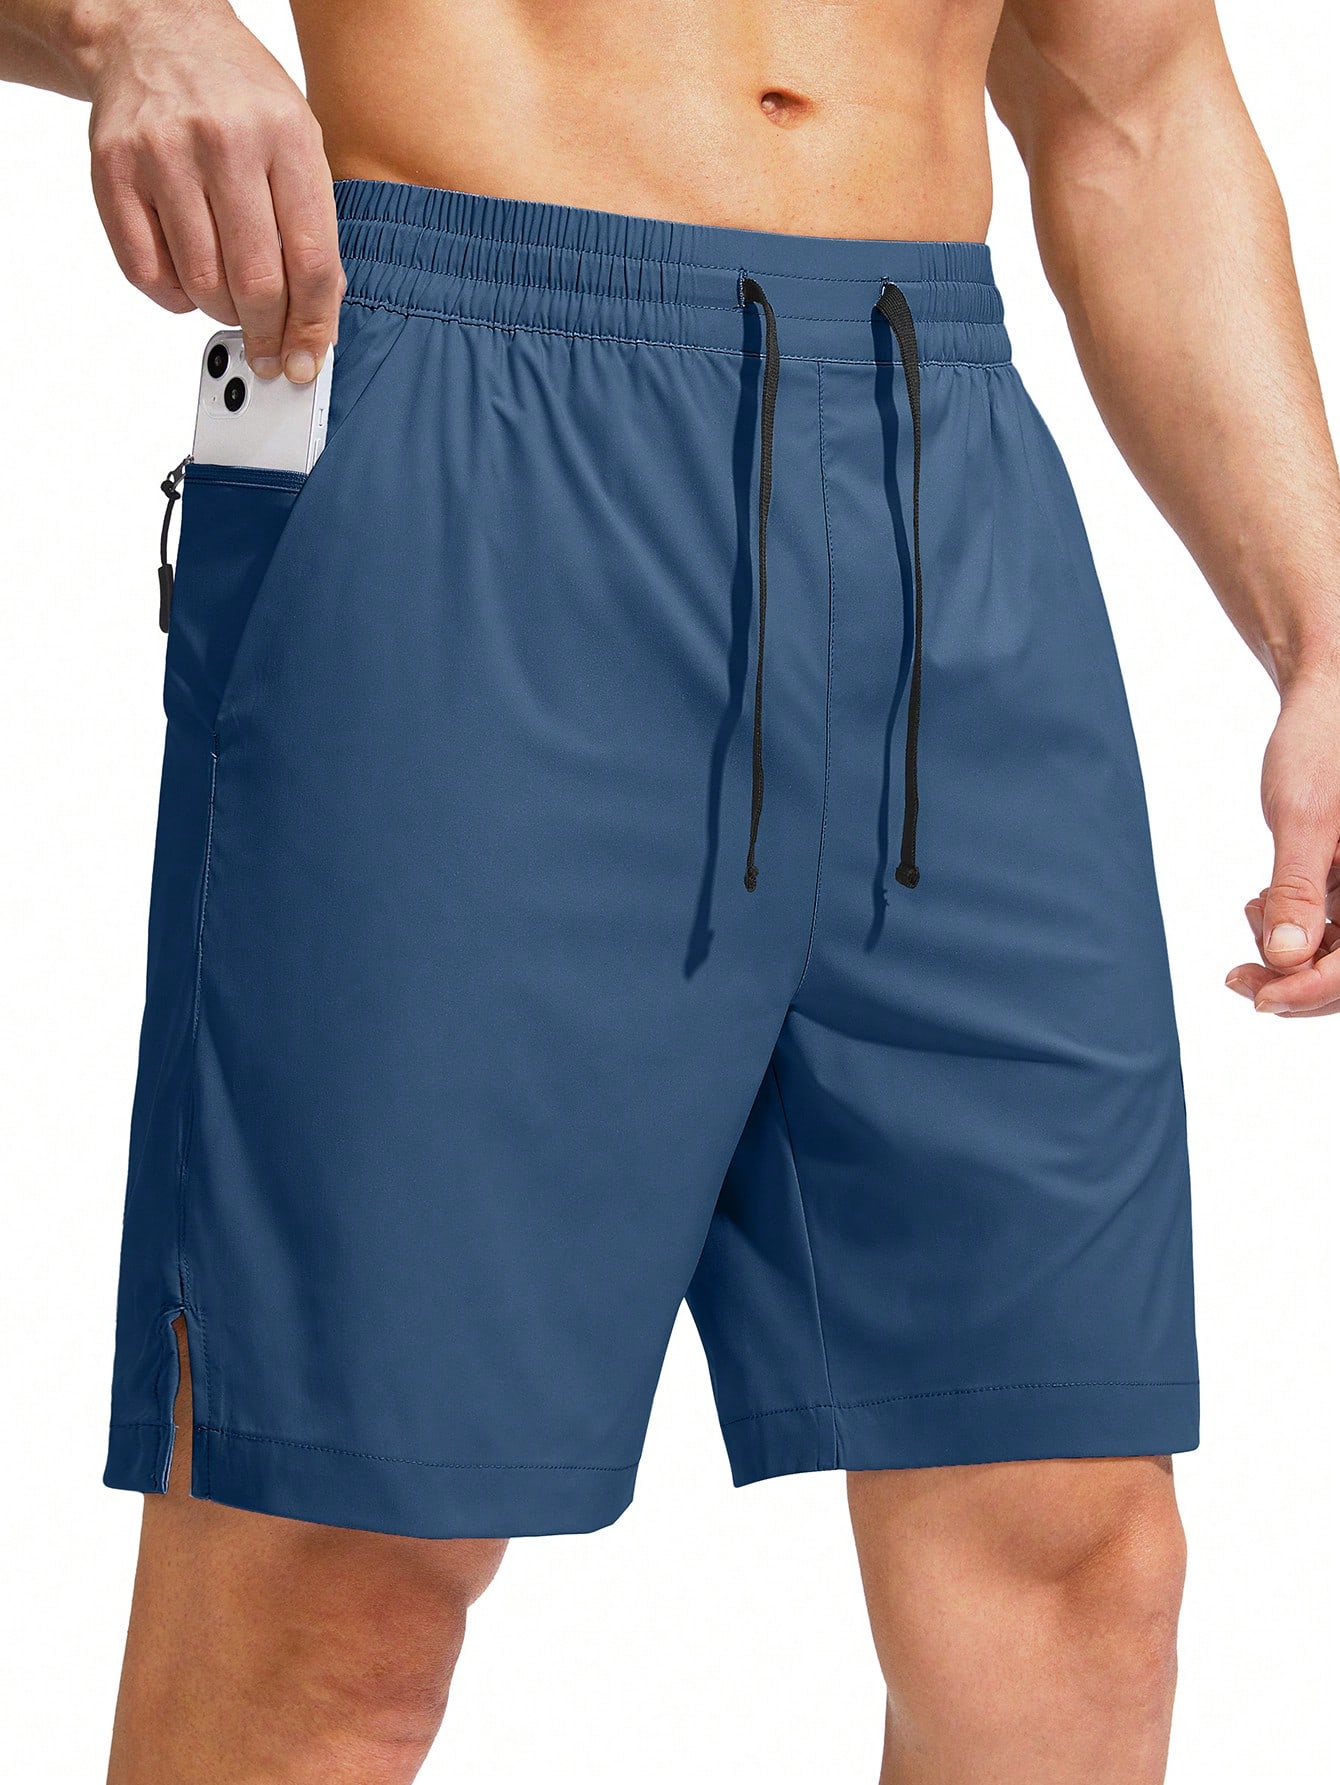 G Gradual G Gradual Мужские плавки Быстросохнущий купальный костюм Пляжные шорты для мужчин с карманами на молнии и сетчатой ​​подкладкой Серые шорты, бирюзовый синий